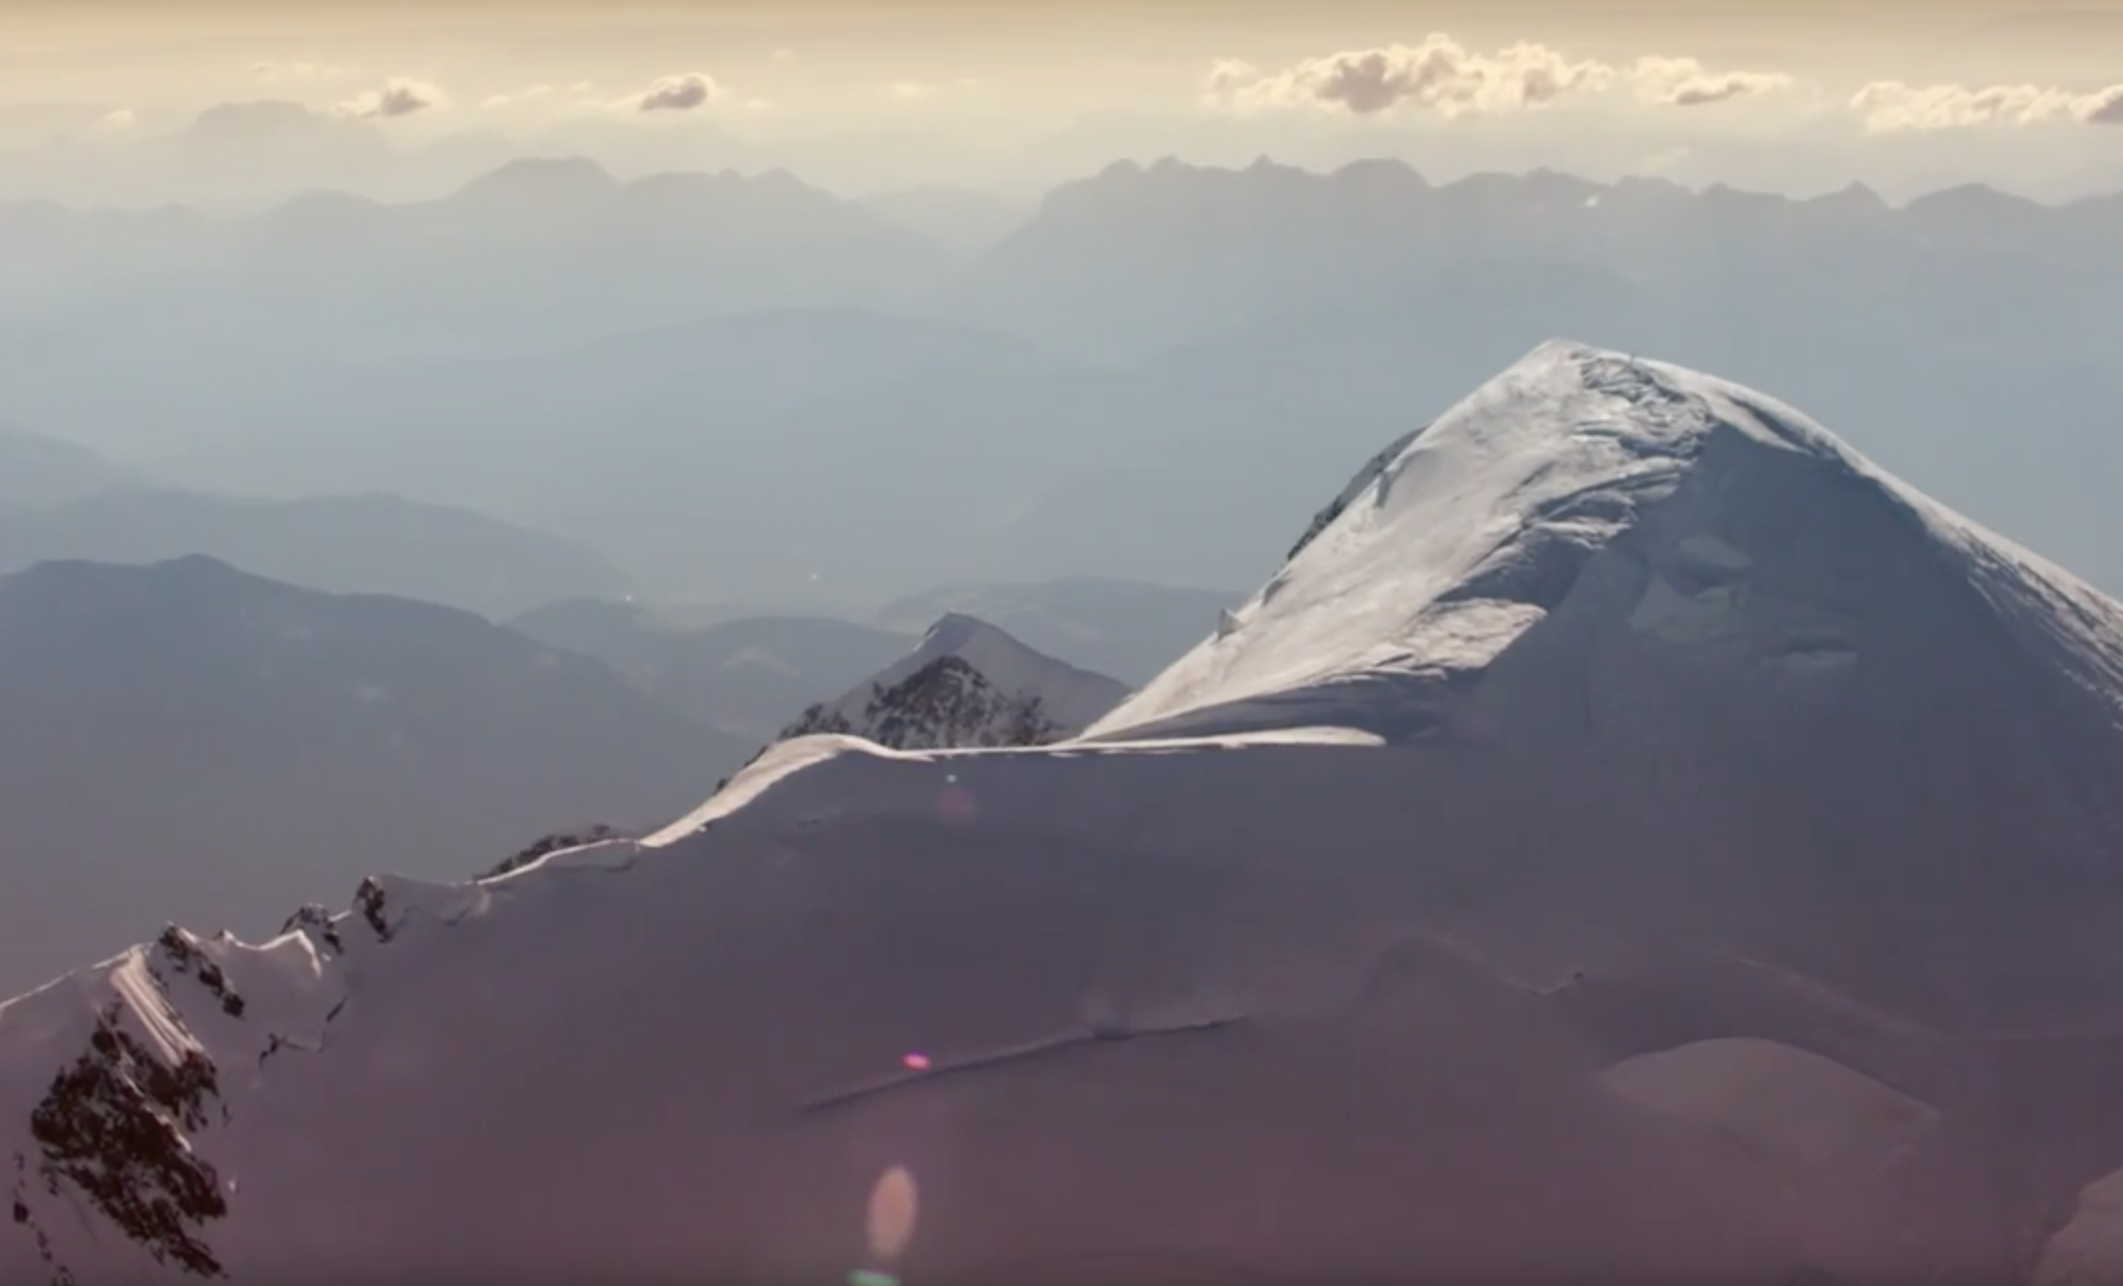 Google se lance dans une ascension virtuelle du Mont Blanc